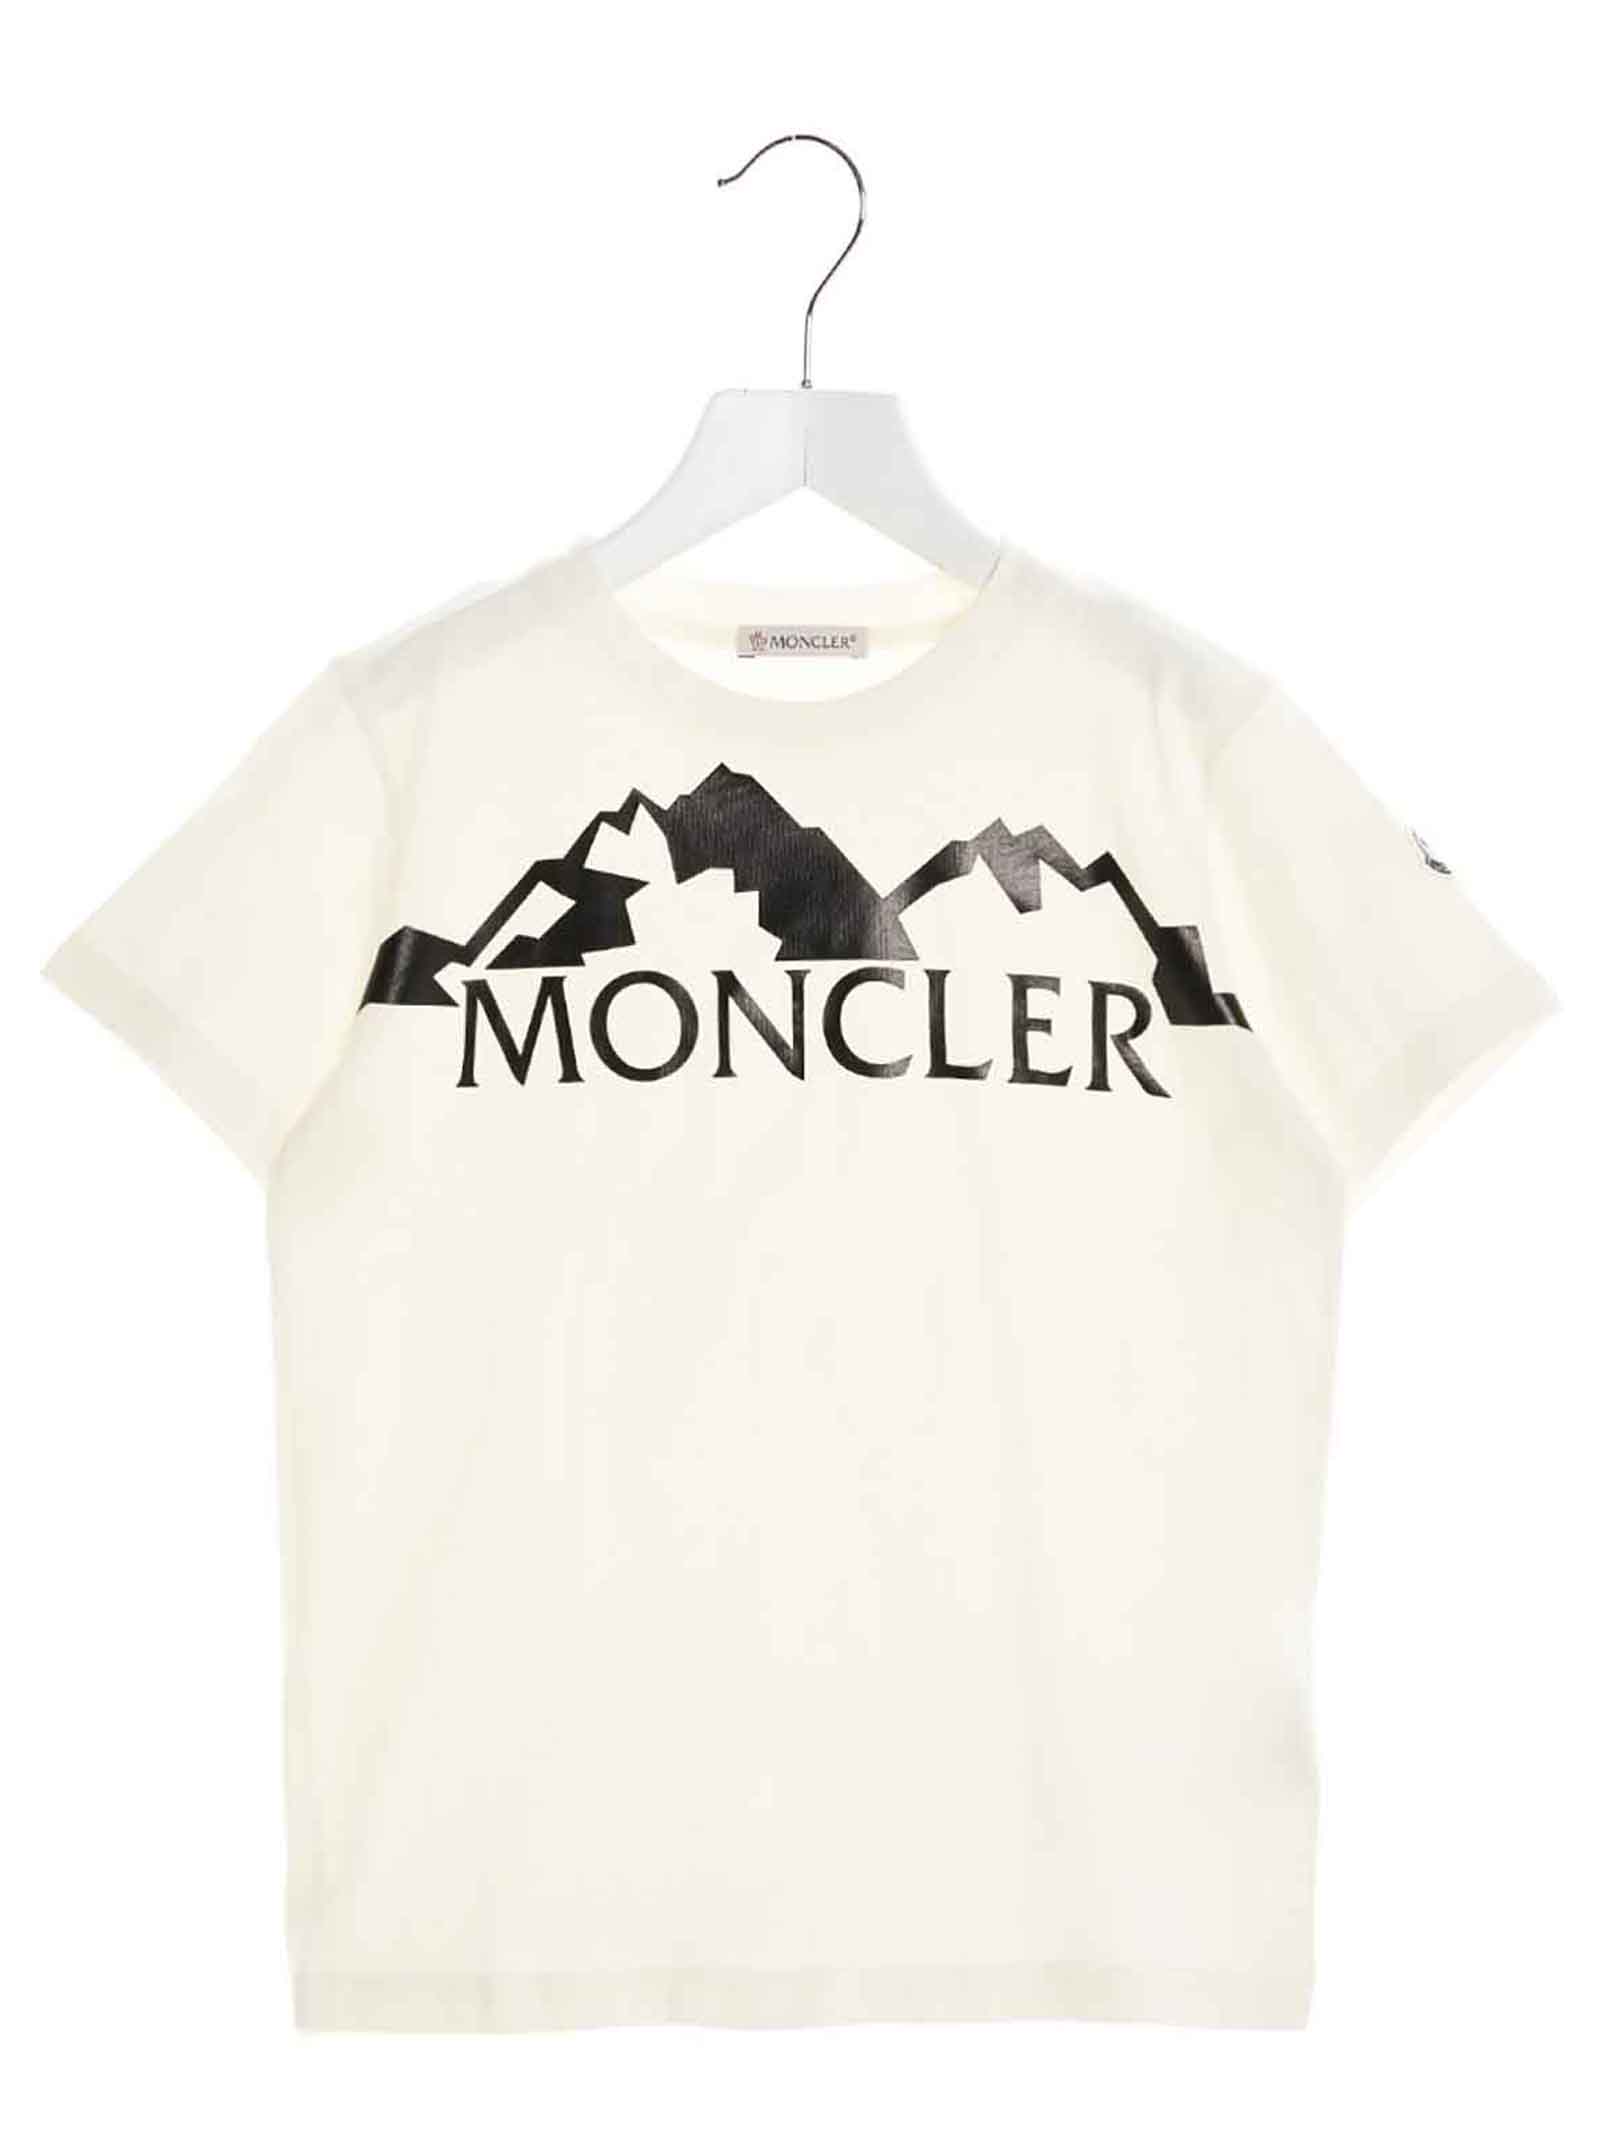 moncler t shirt price